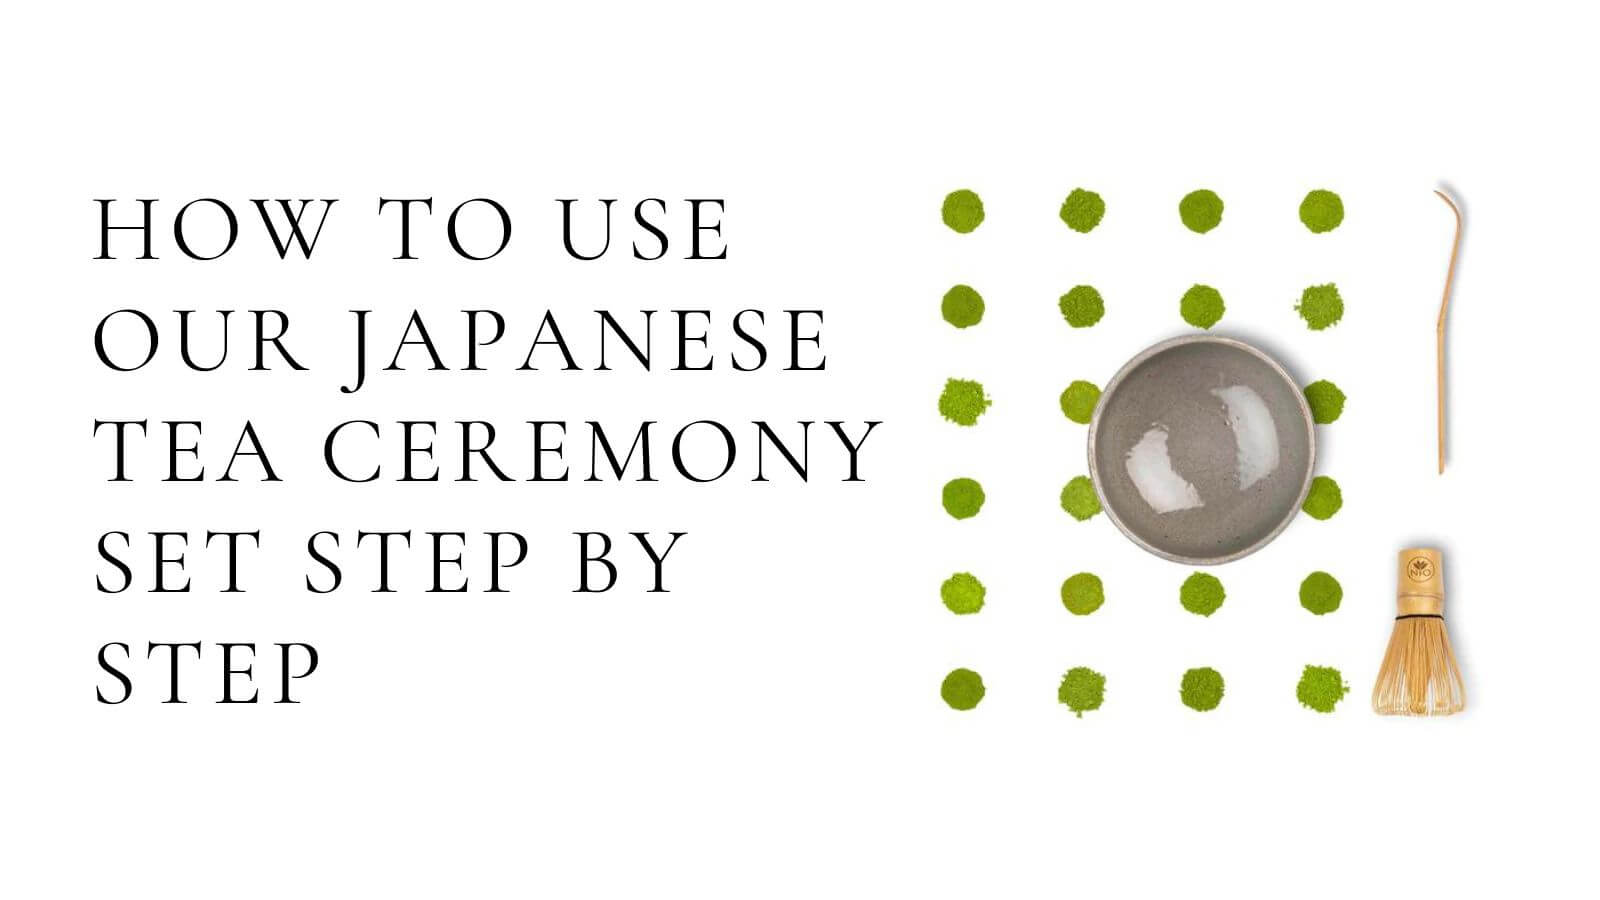 Video laden: Wie Sie unser japanisches Teezeremonie-Set Schritt für Schritt verwenden